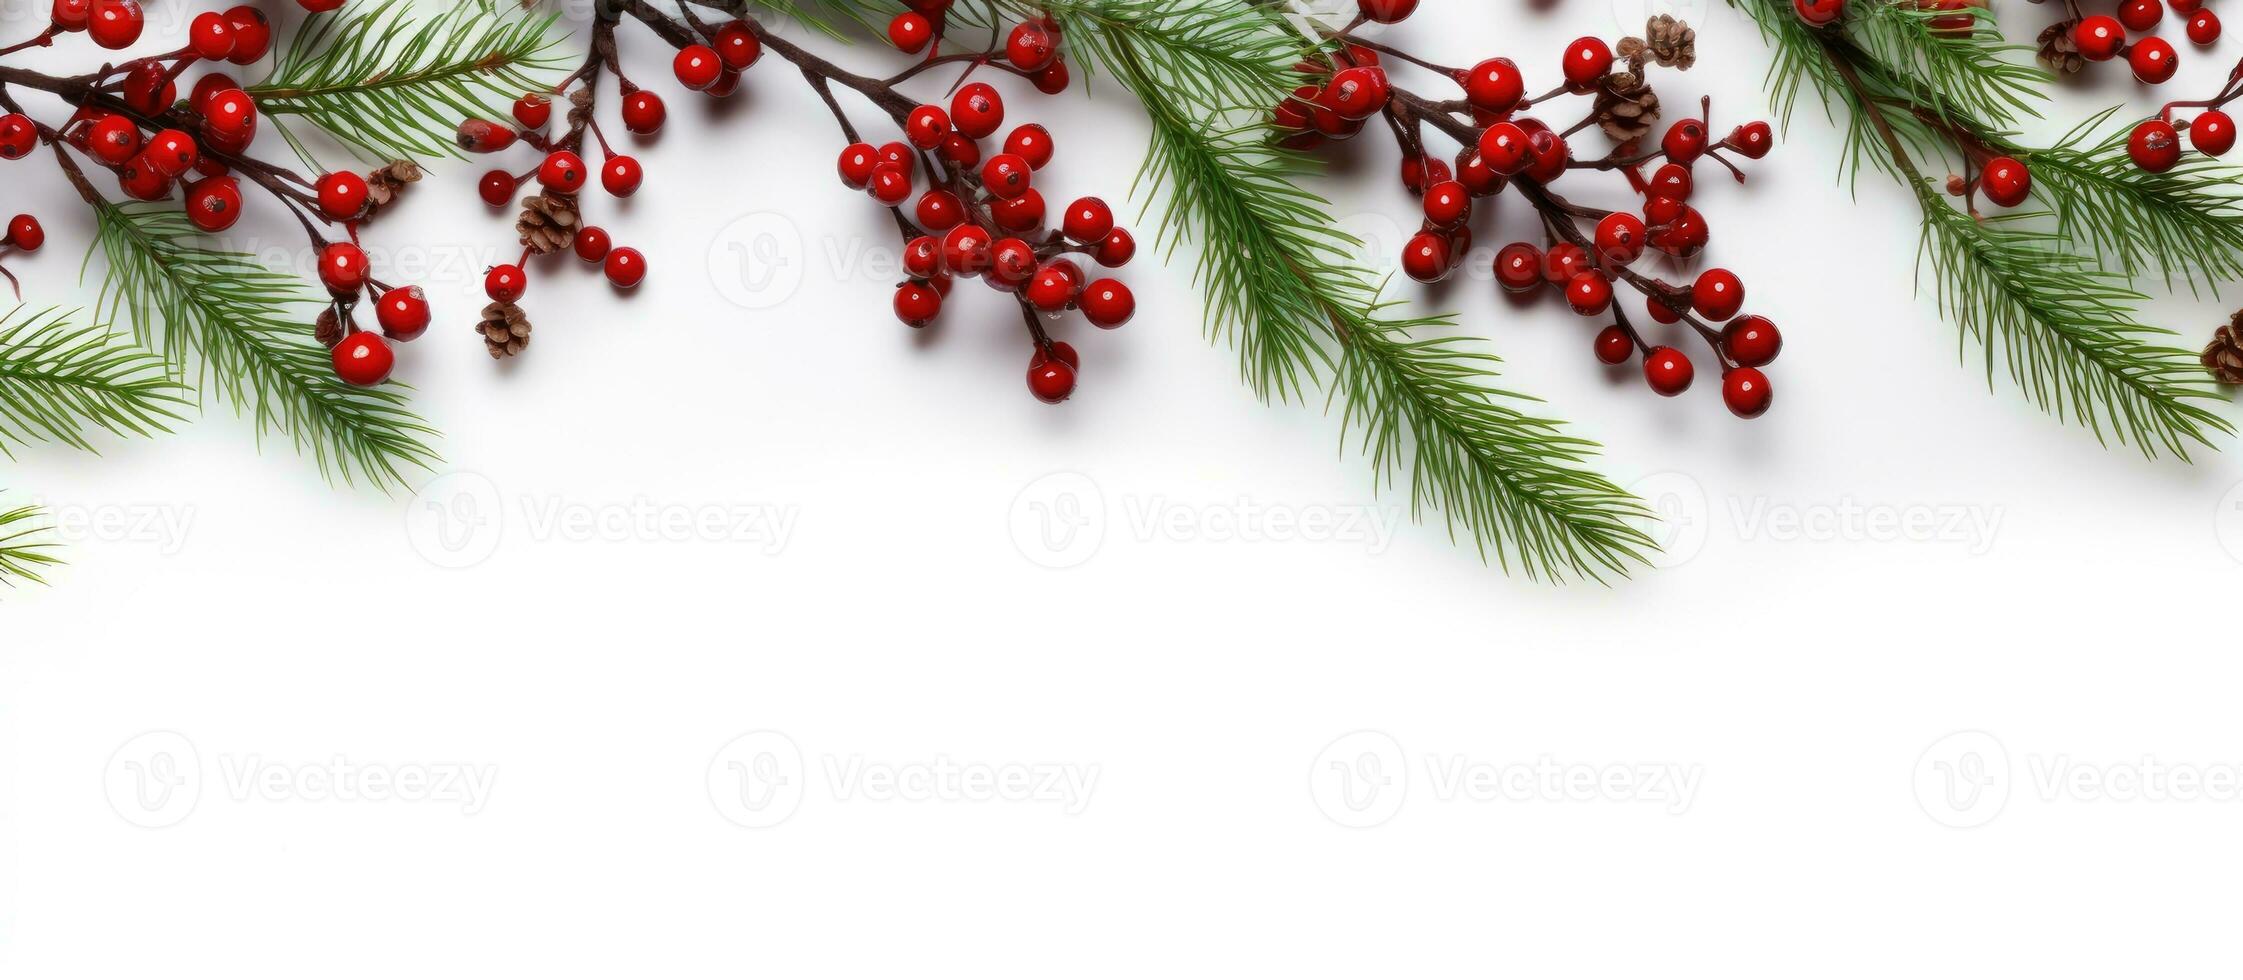 Natale flatlay con abete rosso rami rosso frutti di bosco e bianca sfondo spazio per testo foto